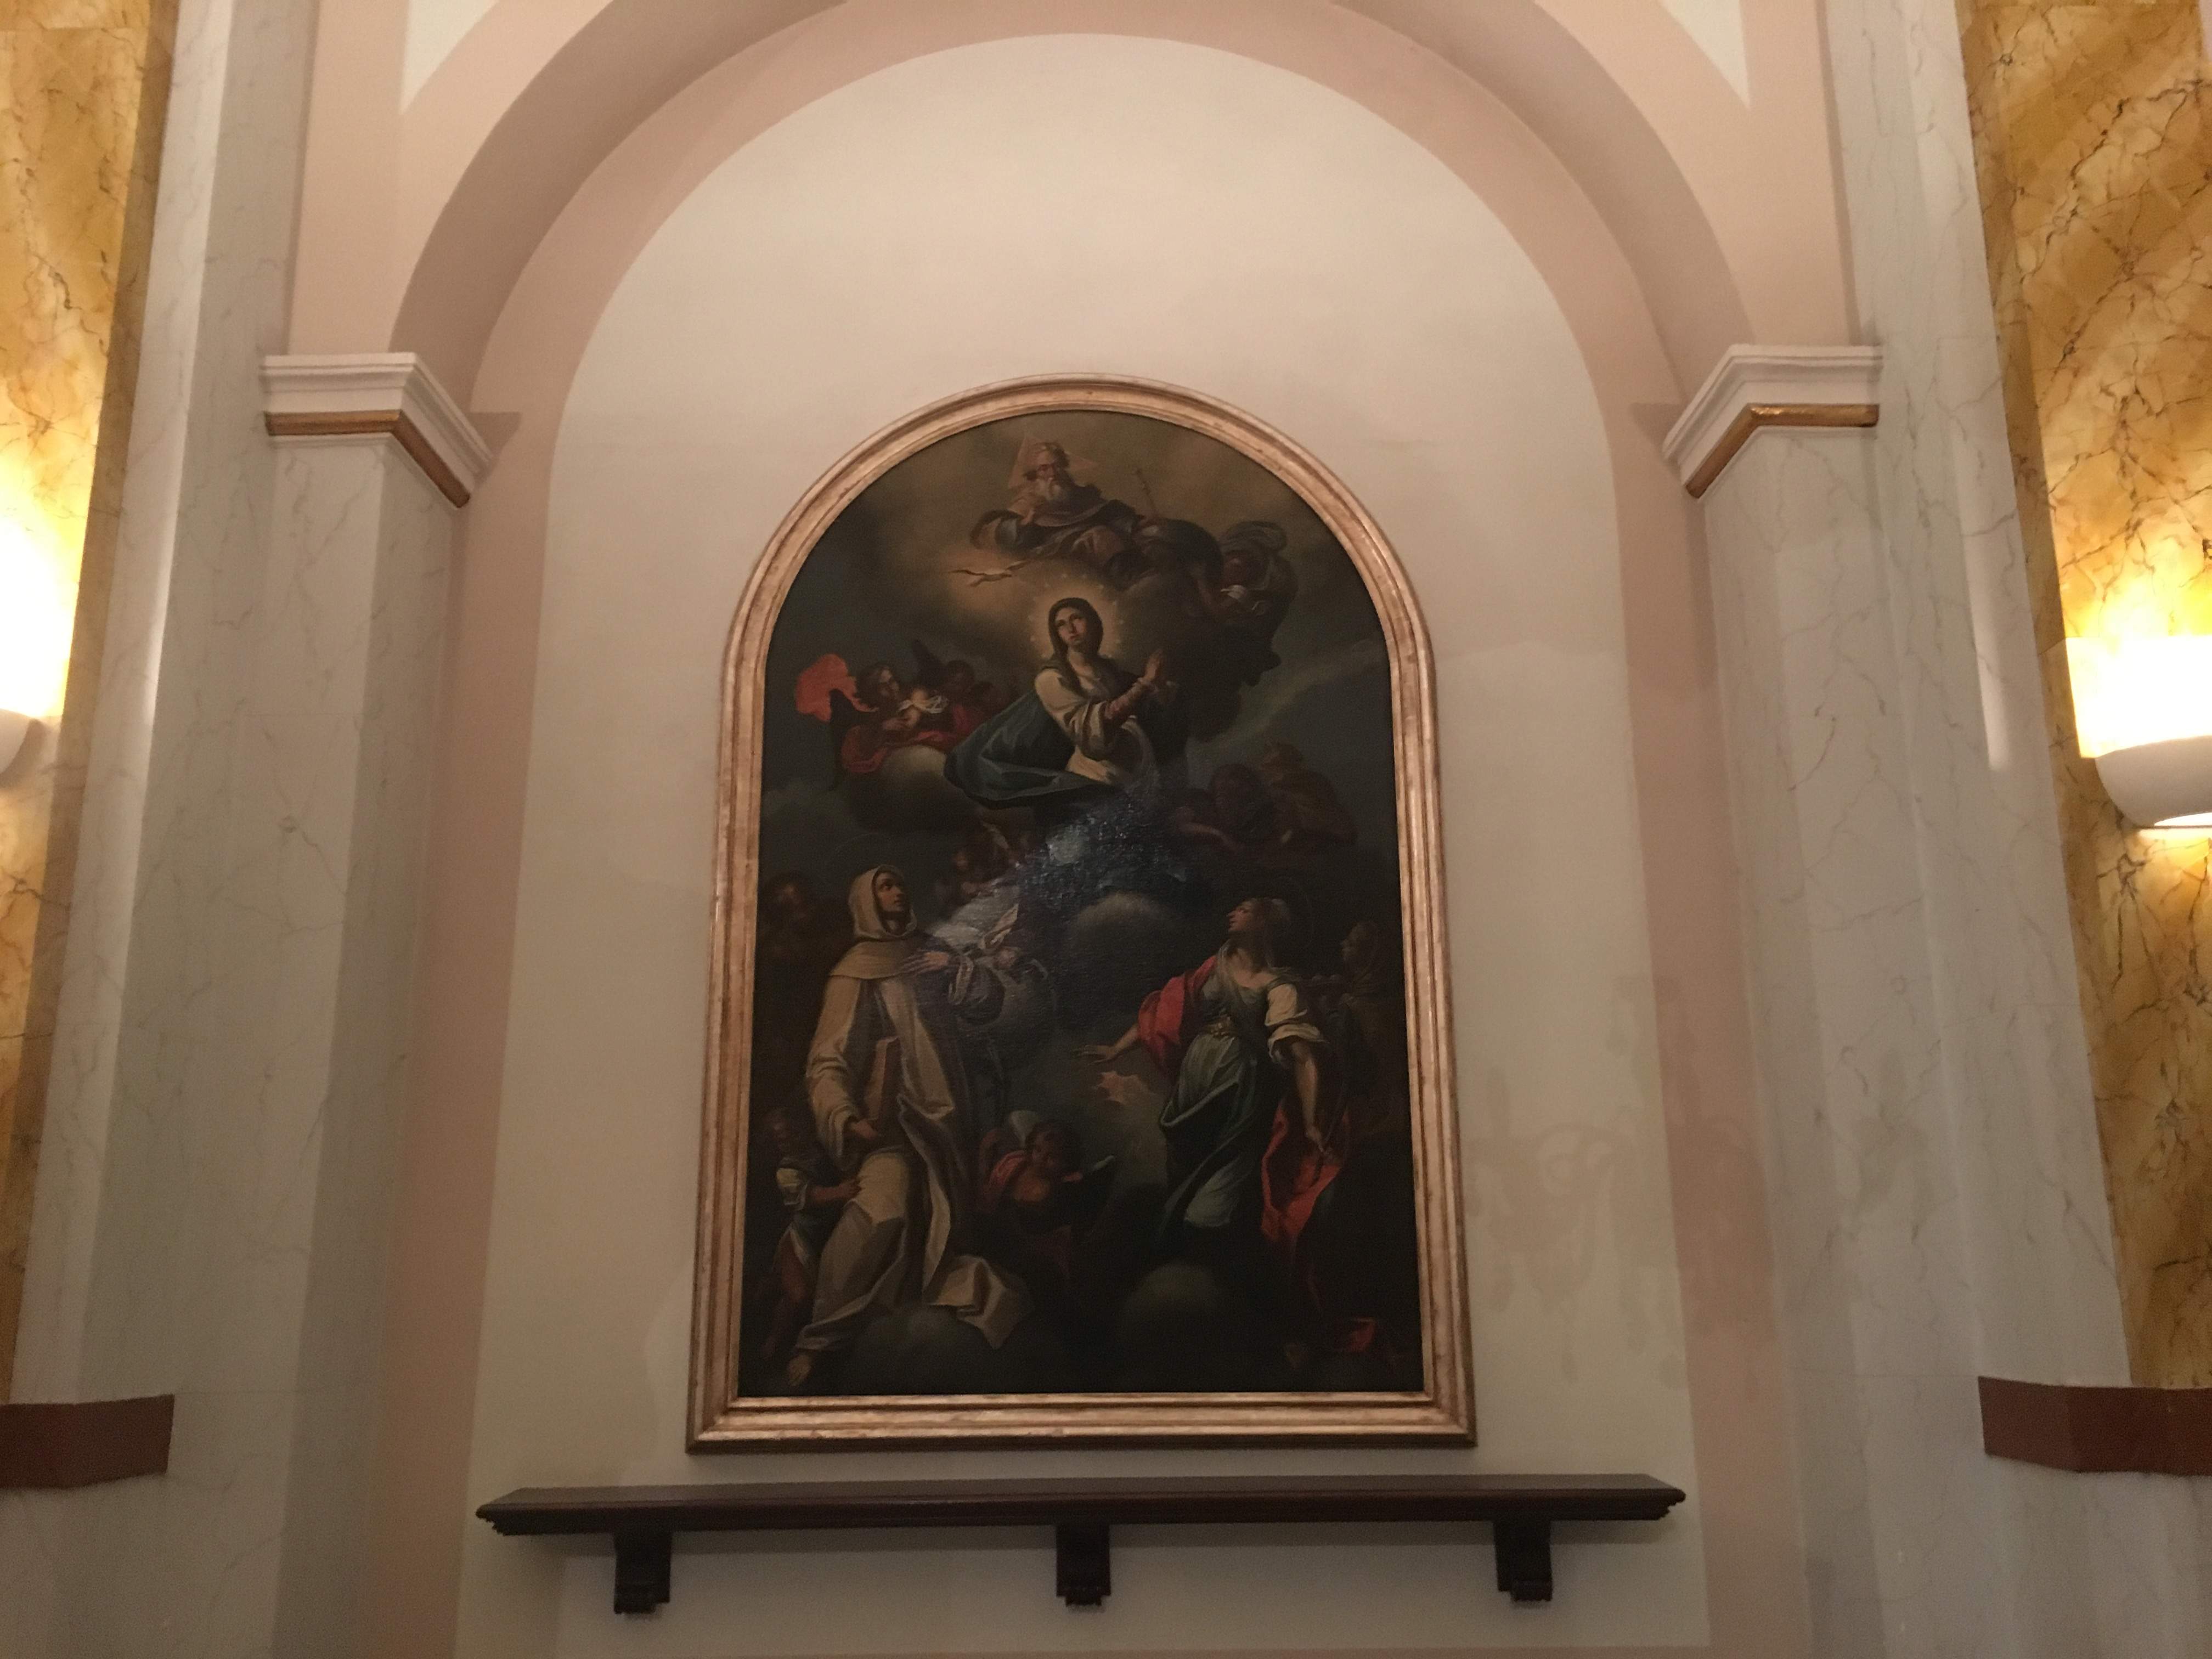 Dipinto conservato nel Duomo.